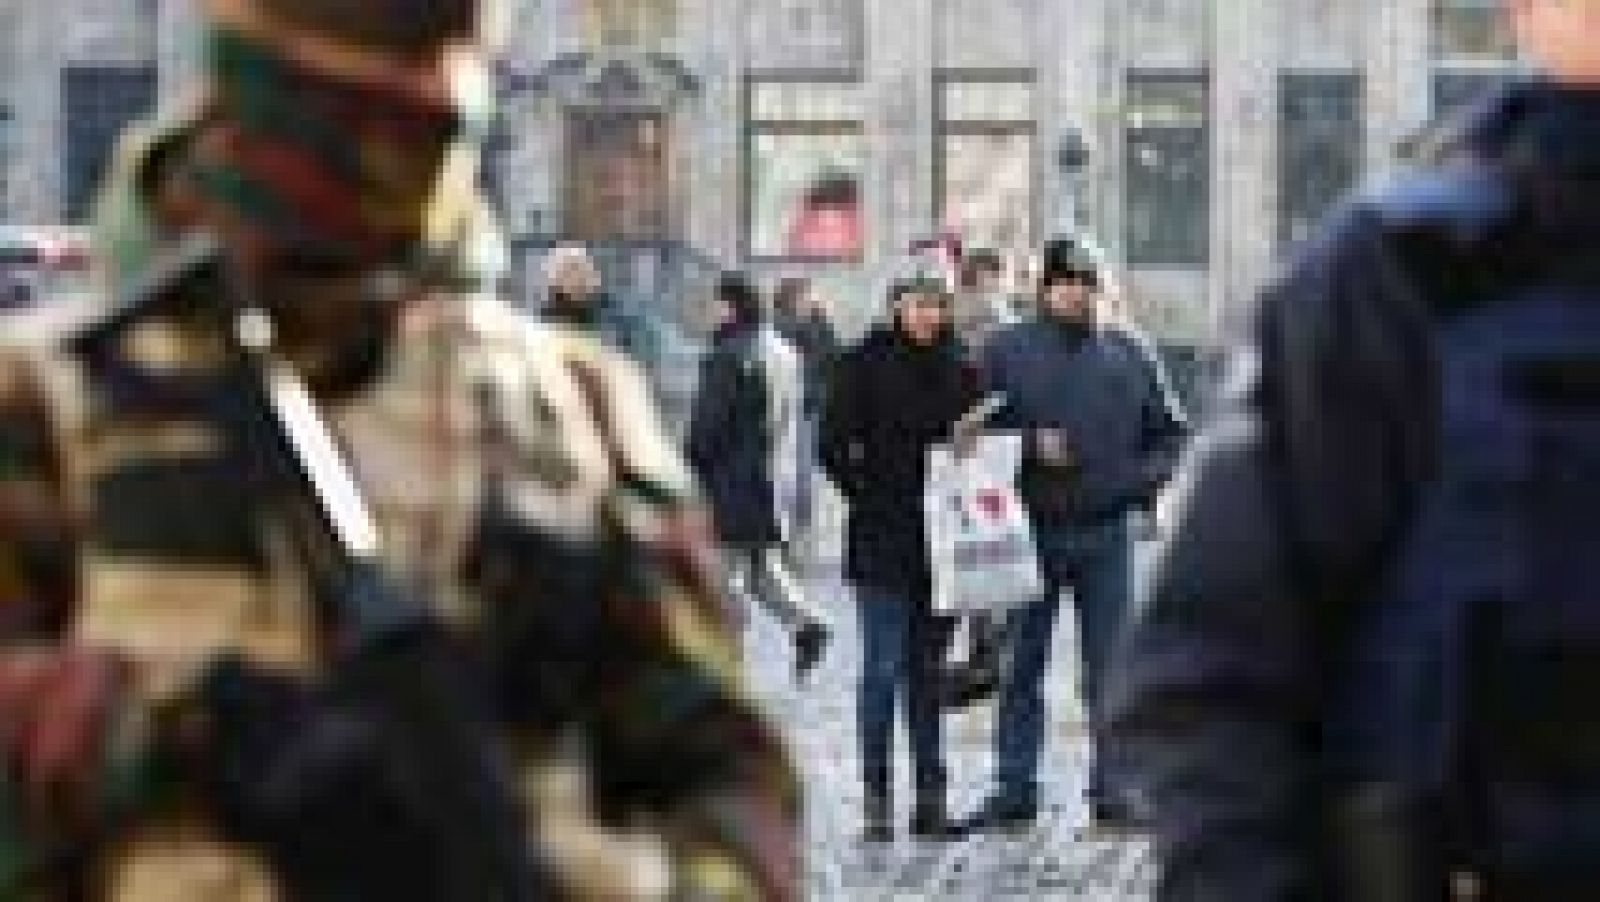 Tercer día de alerta máxima en Bruselas por riesgo de atentado